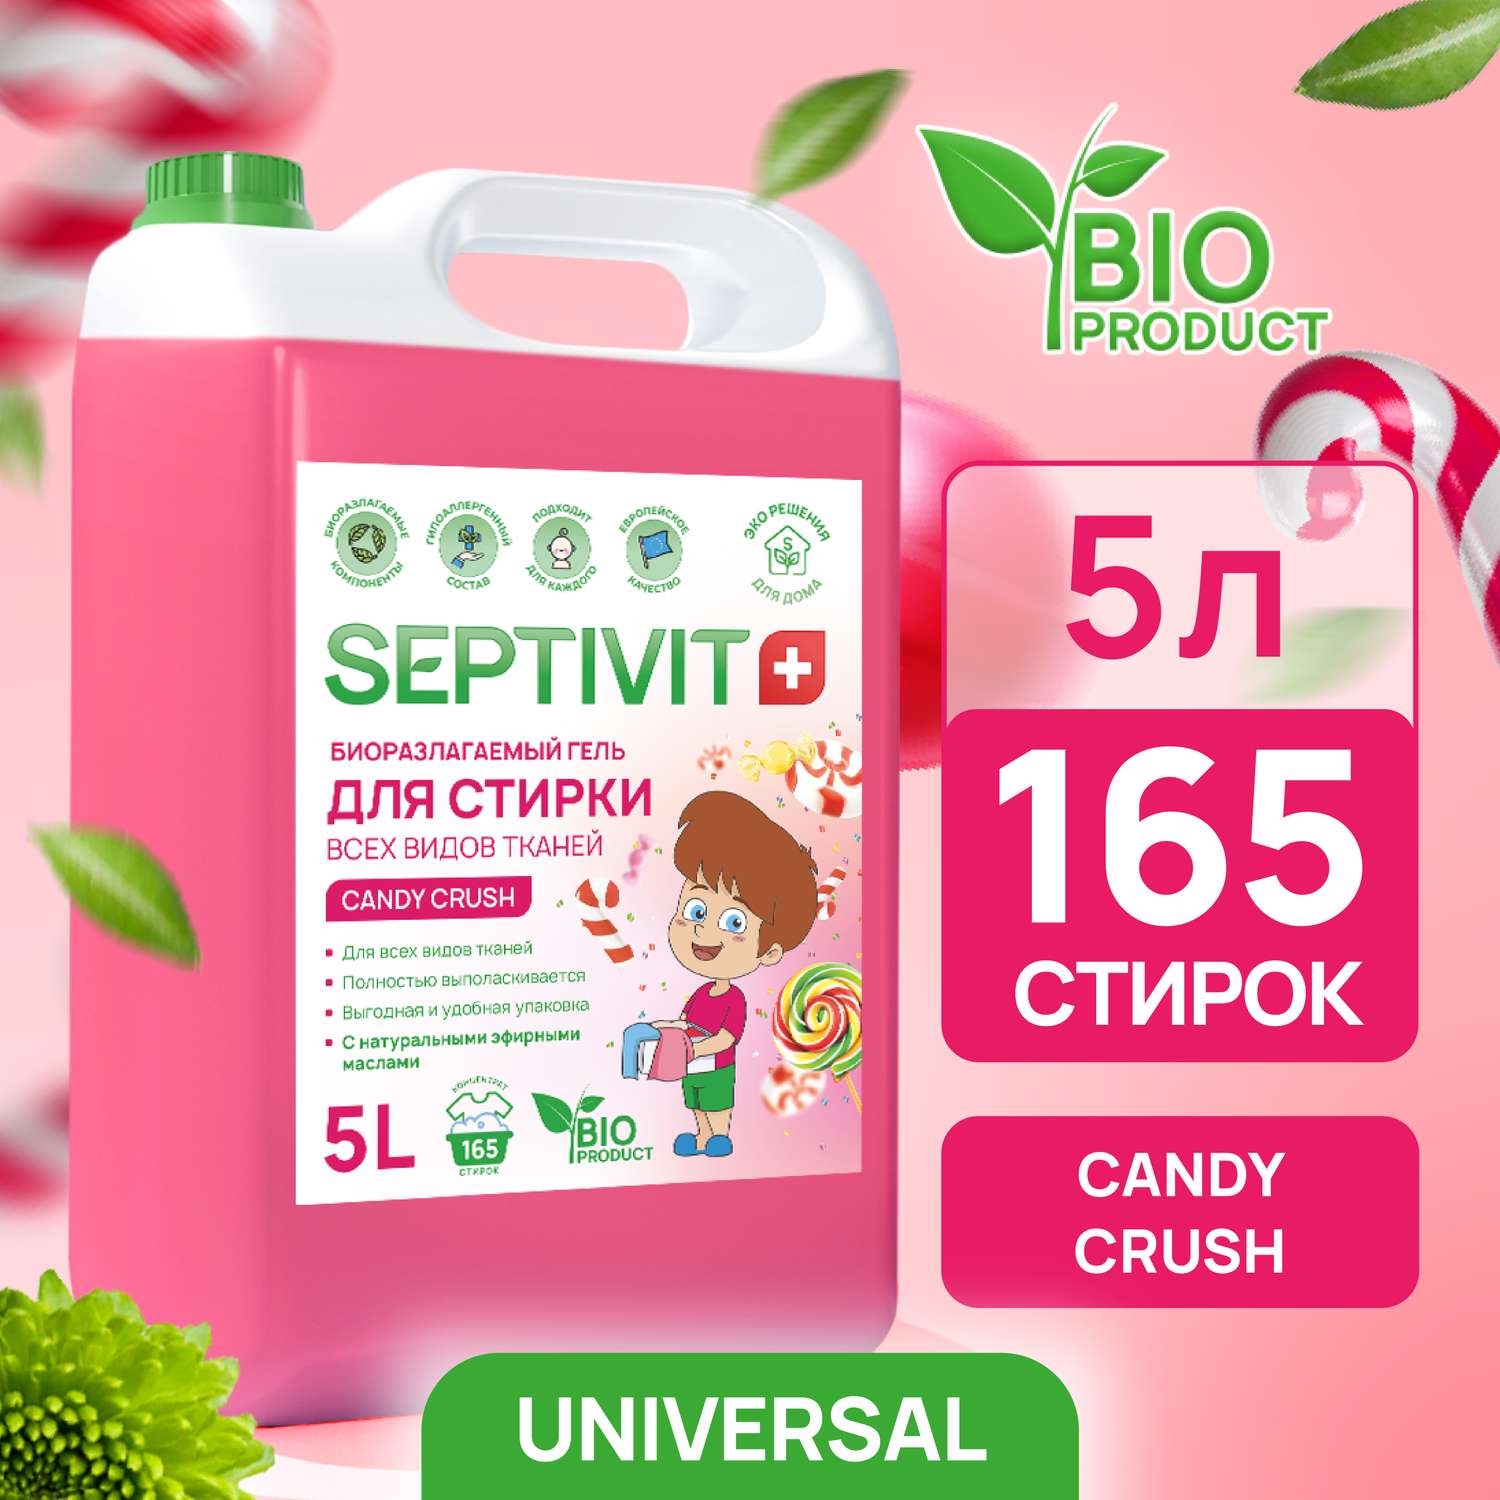 Гель для стирки SEPTIVIT Premium для всех видов тканей с ароматом Candy Crash 5л - фото 1